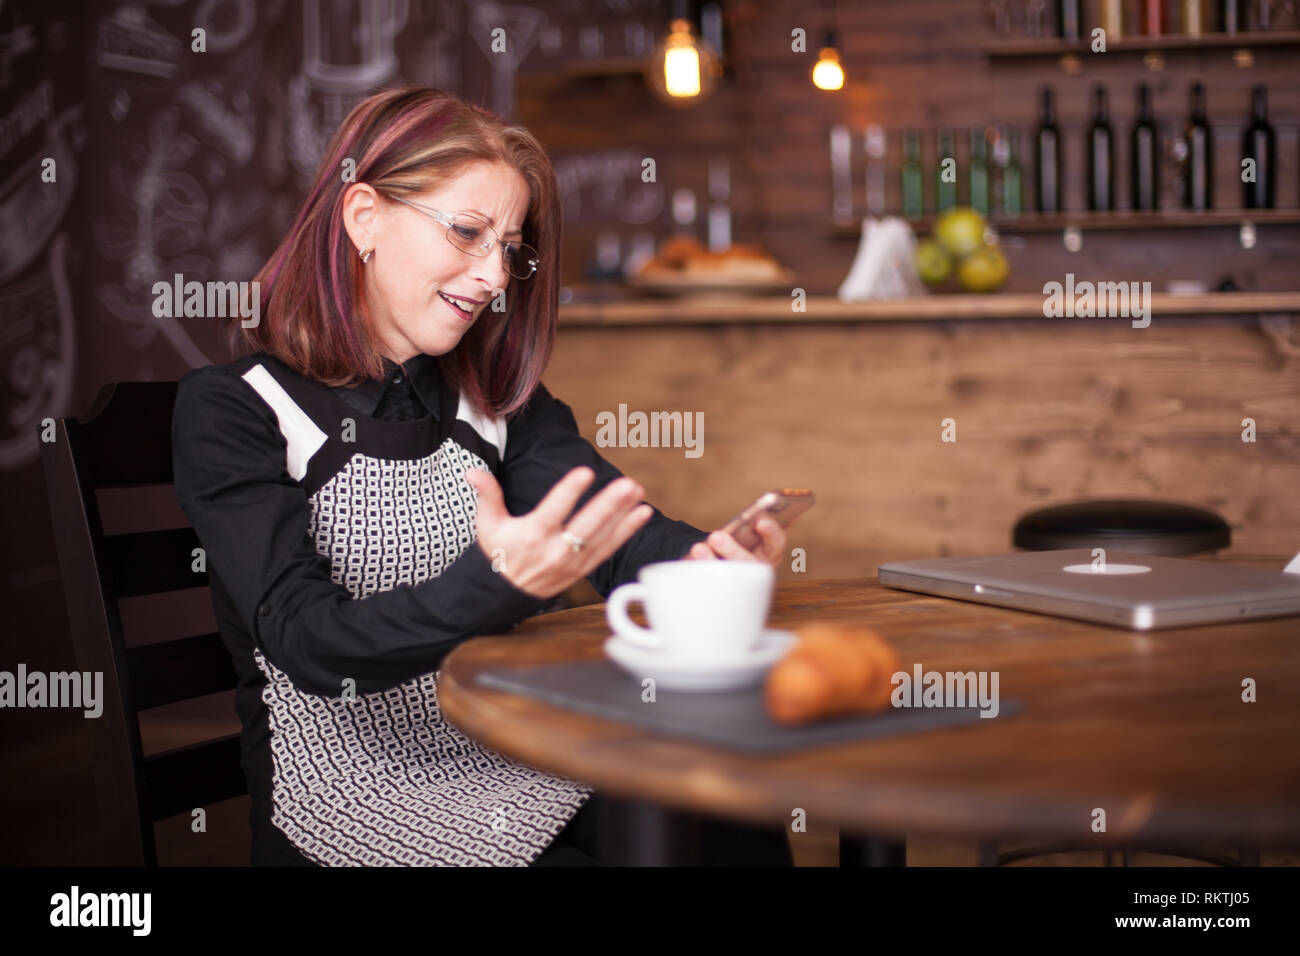 Adult businesswoman étonné tout en utilisant son téléphone à côté de l'anglais un croissant. Belle pub vintage Banque D'Images